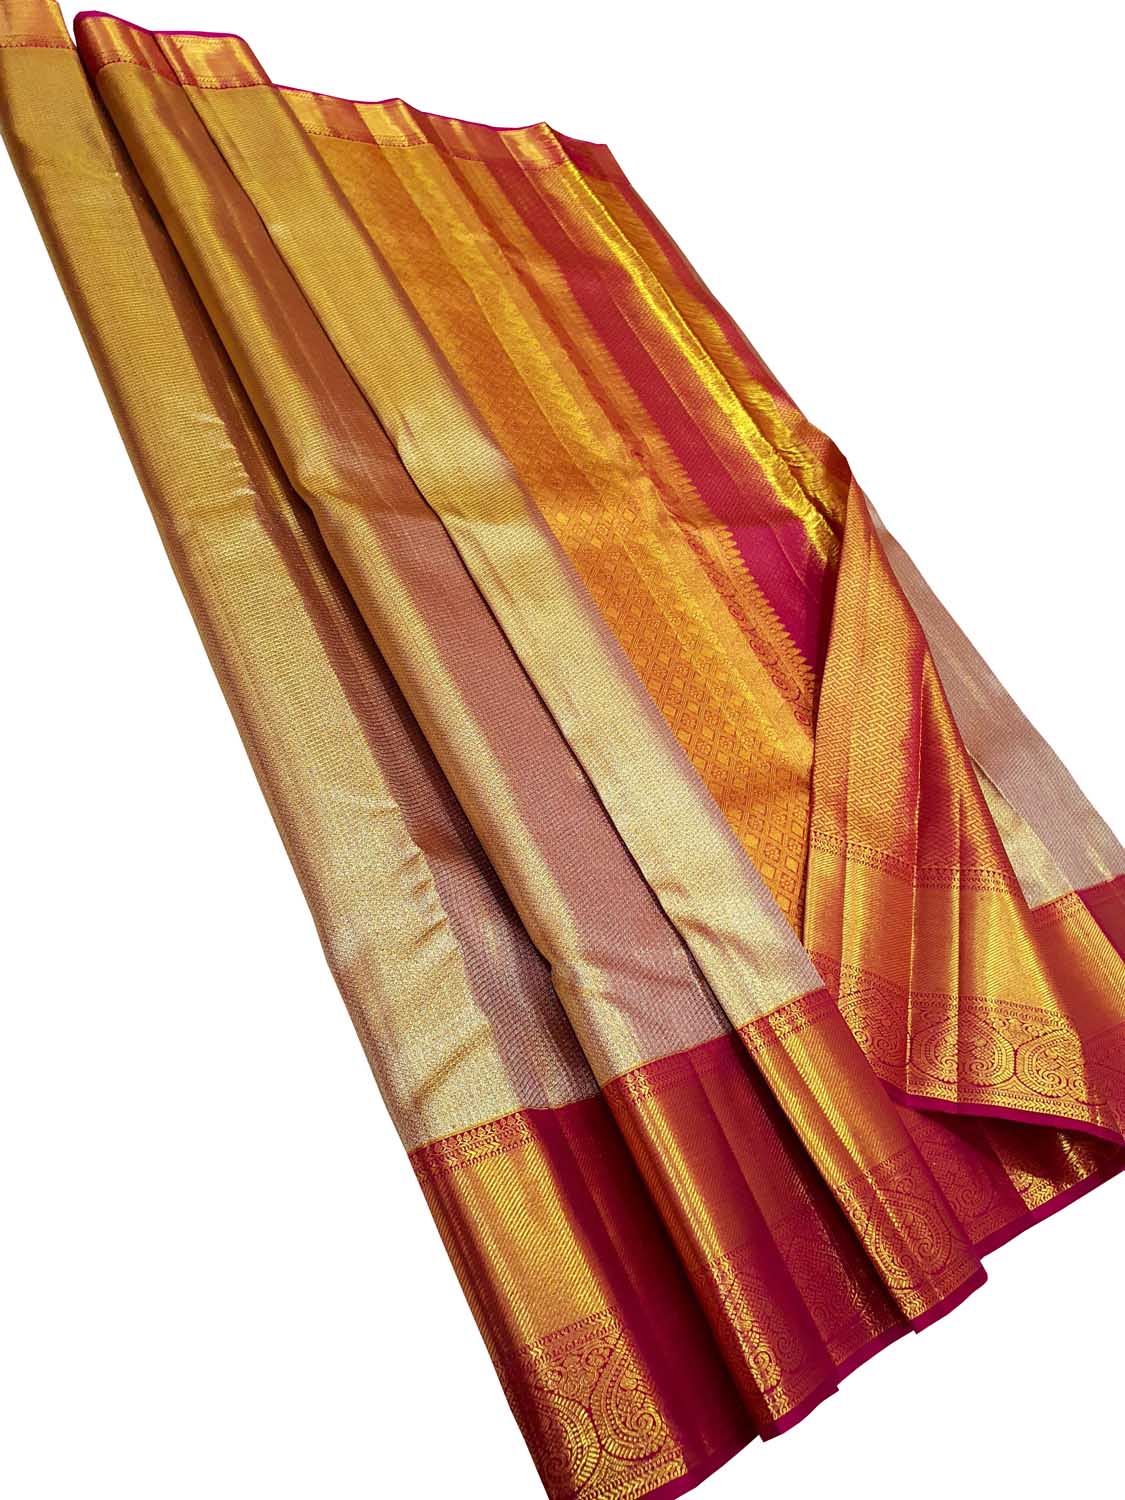 Exquisite Golden Kanjeevaram Handloom Tissue Silk Saree: A Timeless Masterpiece - Luxurion World